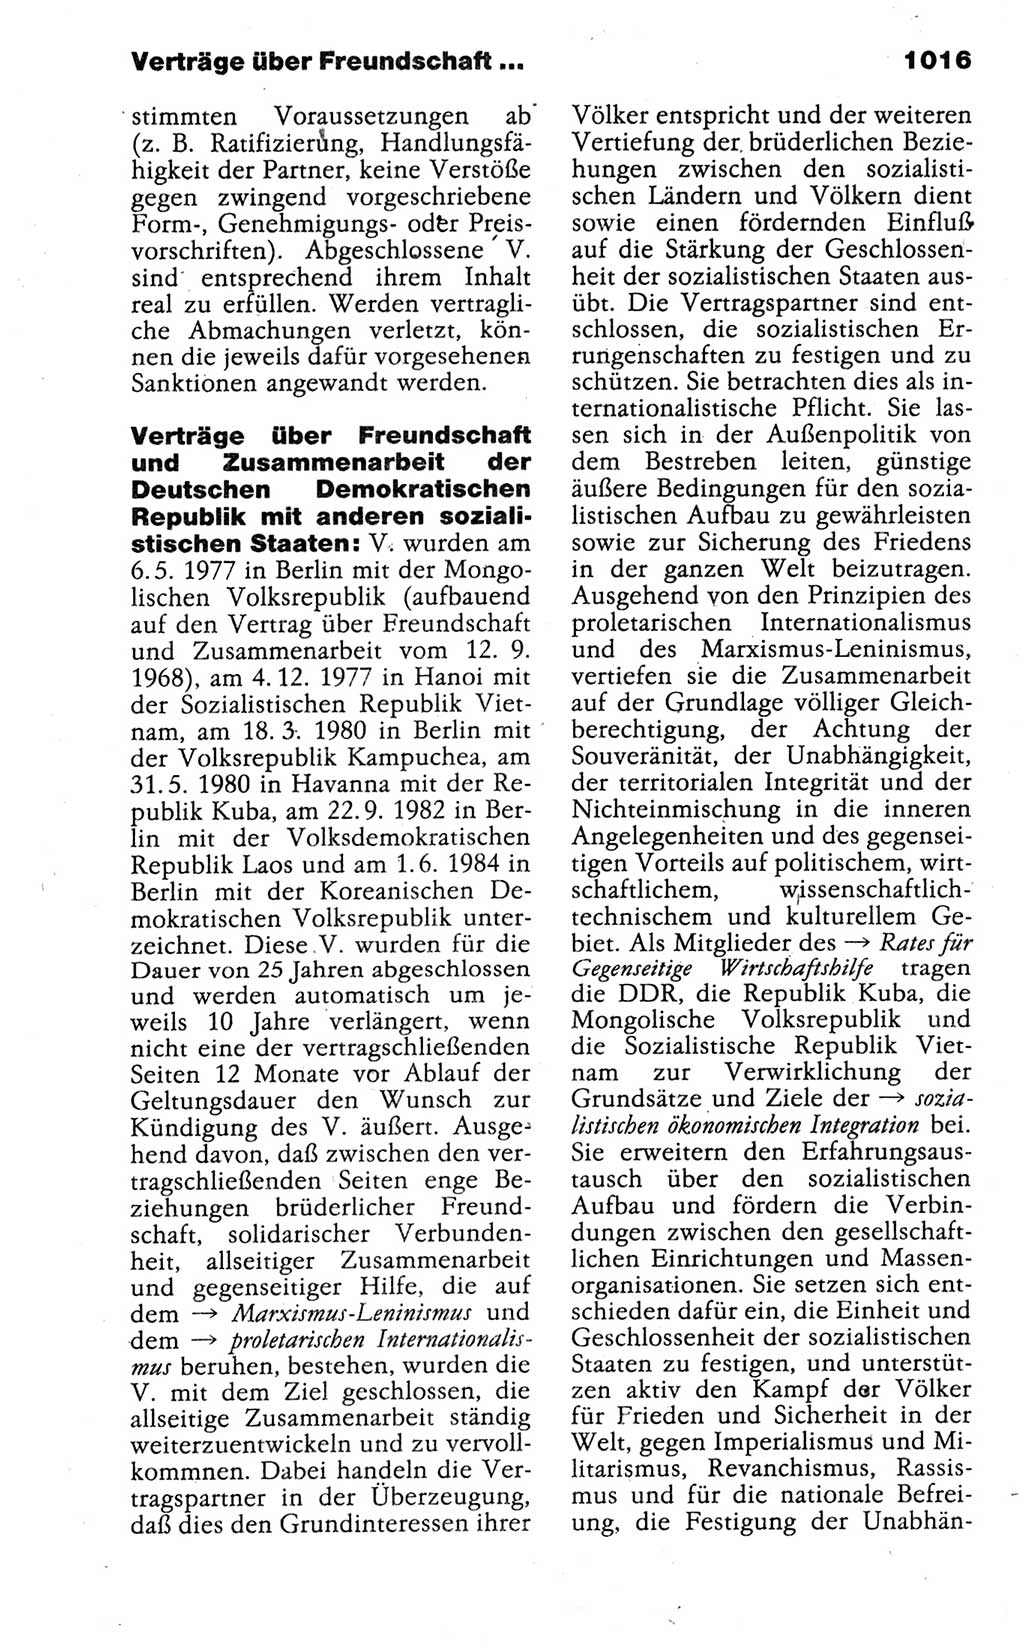 Kleines politisches Wörterbuch [Deutsche Demokratische Republik (DDR)] 1988, Seite 1016 (Kl. pol. Wb. DDR 1988, S. 1016)